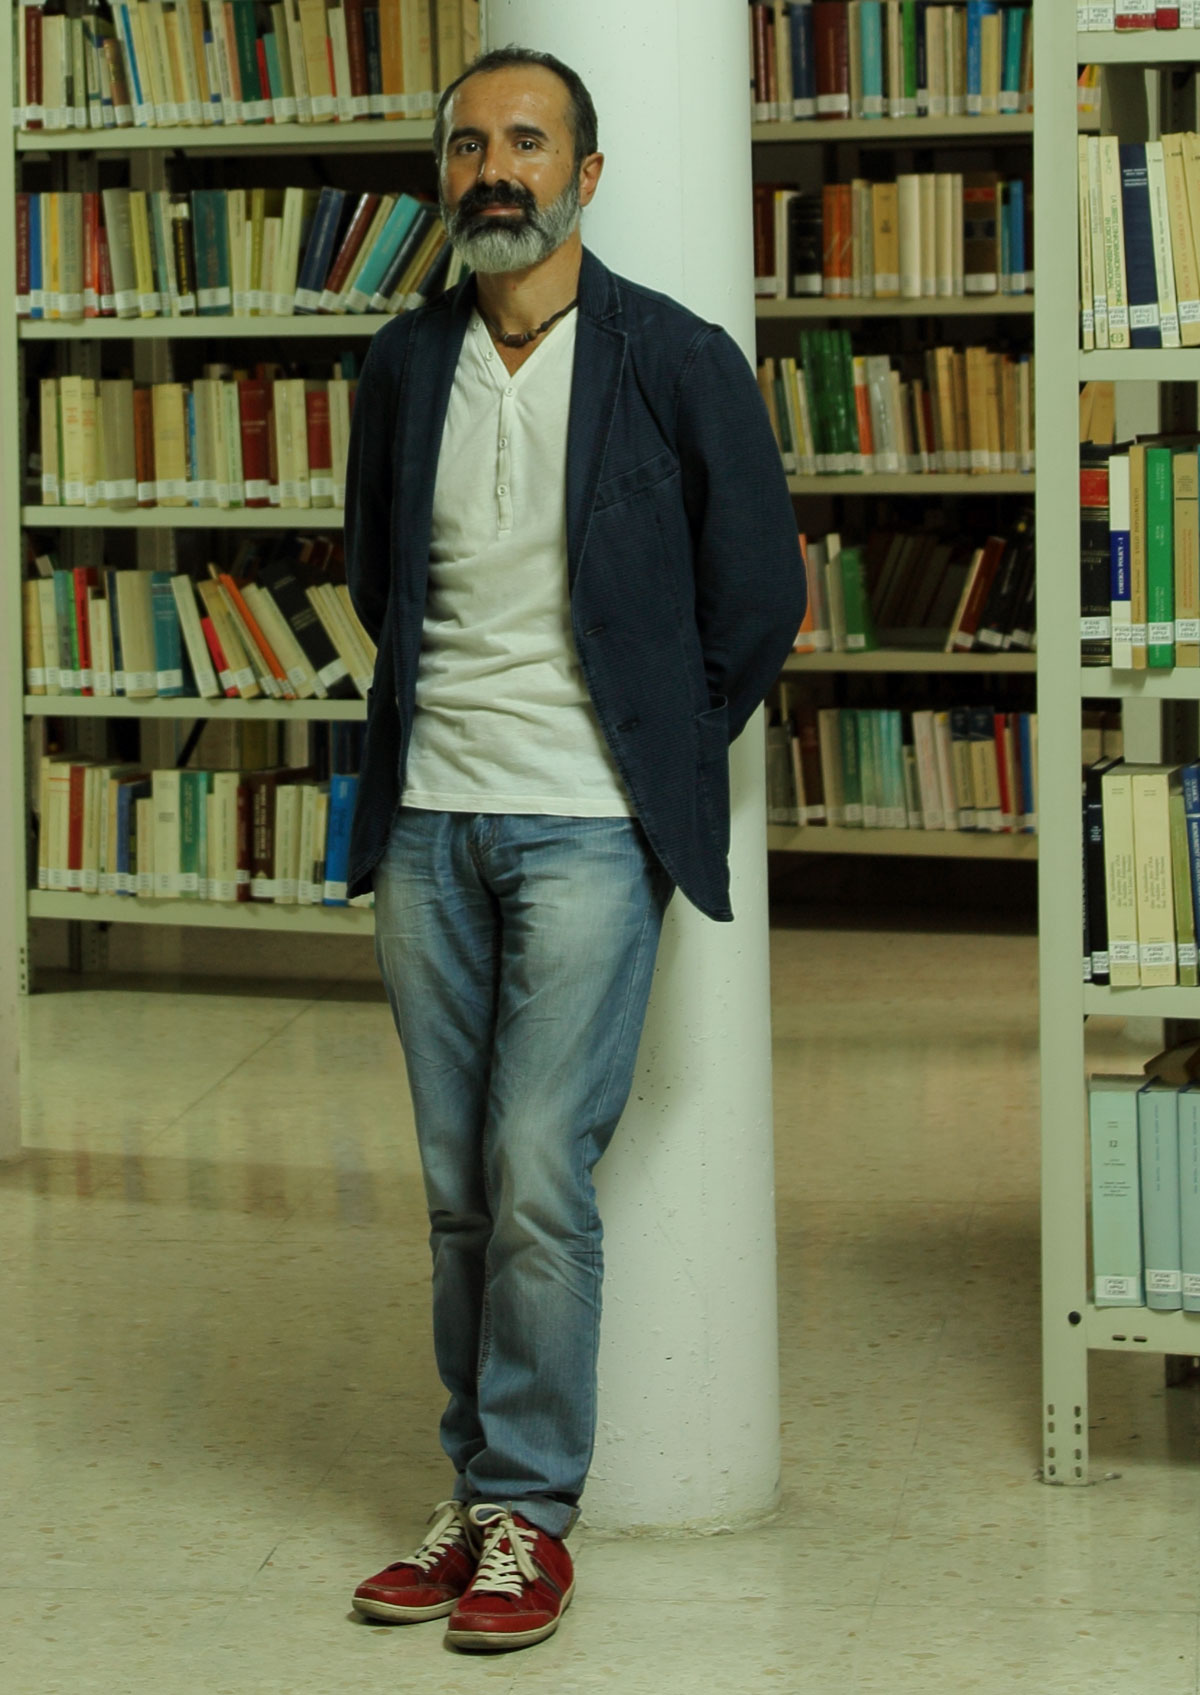 Octavio Salazar en una biblioteca. Imagen cedida a elplural.com por Planeta